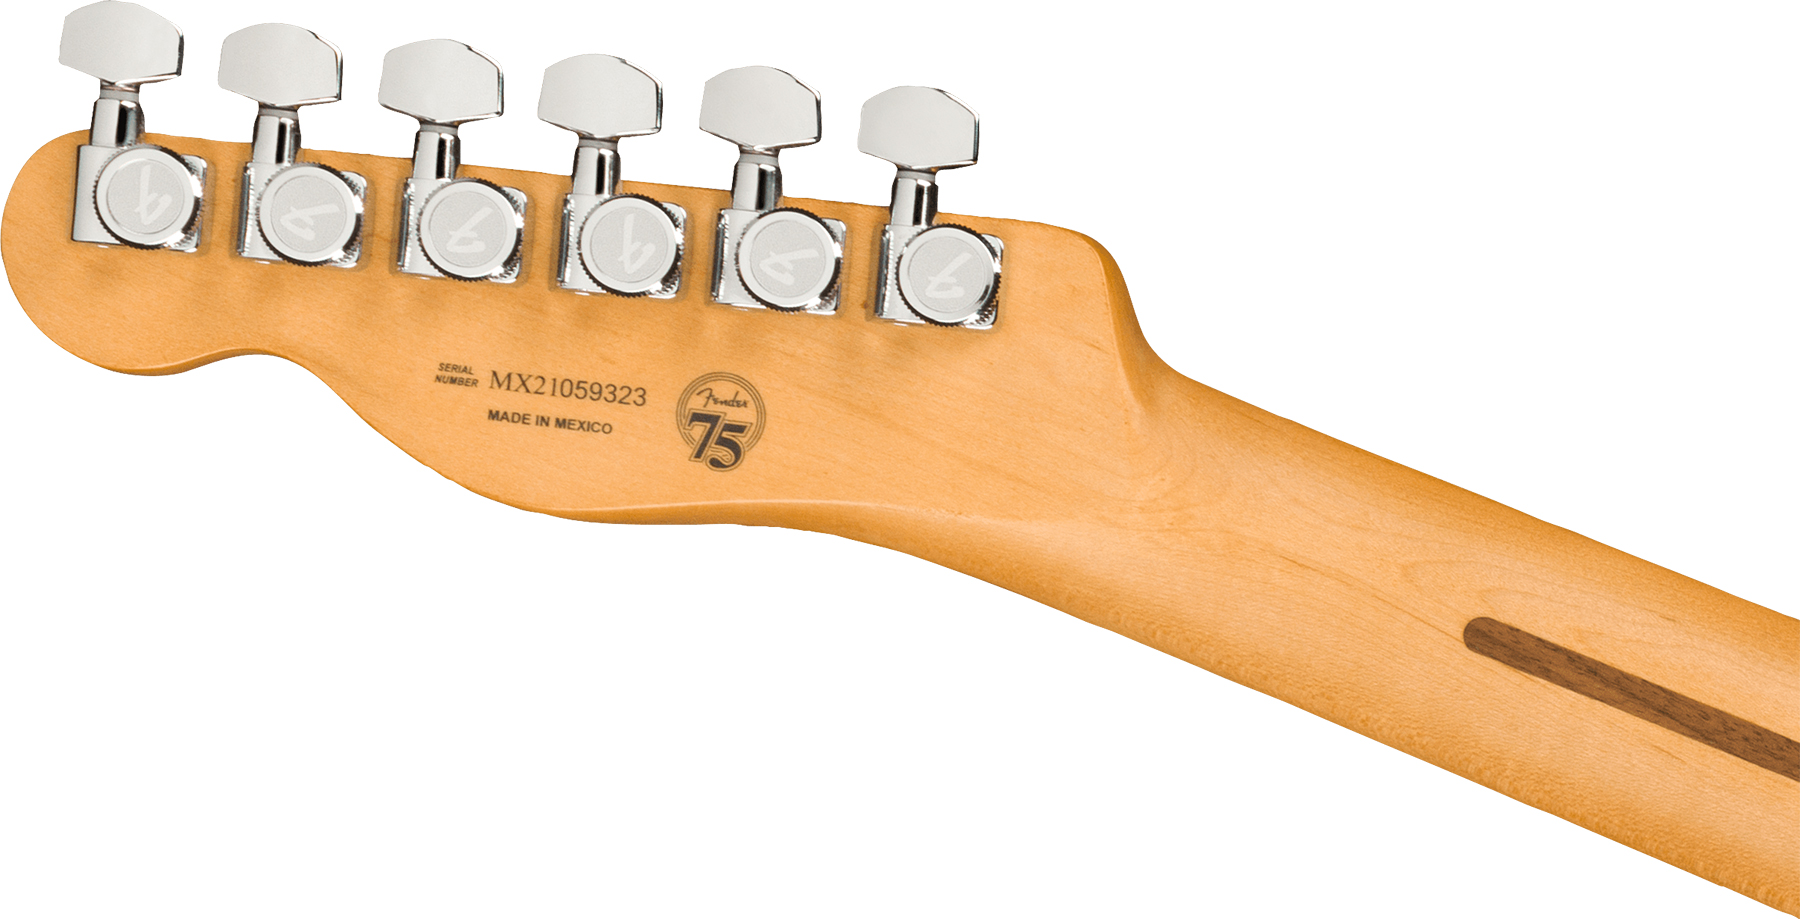 Fender Tele Player Plus Mex 2s Ht Mn - Aged Candy Apple Red - Televorm elektrische gitaar - Variation 3